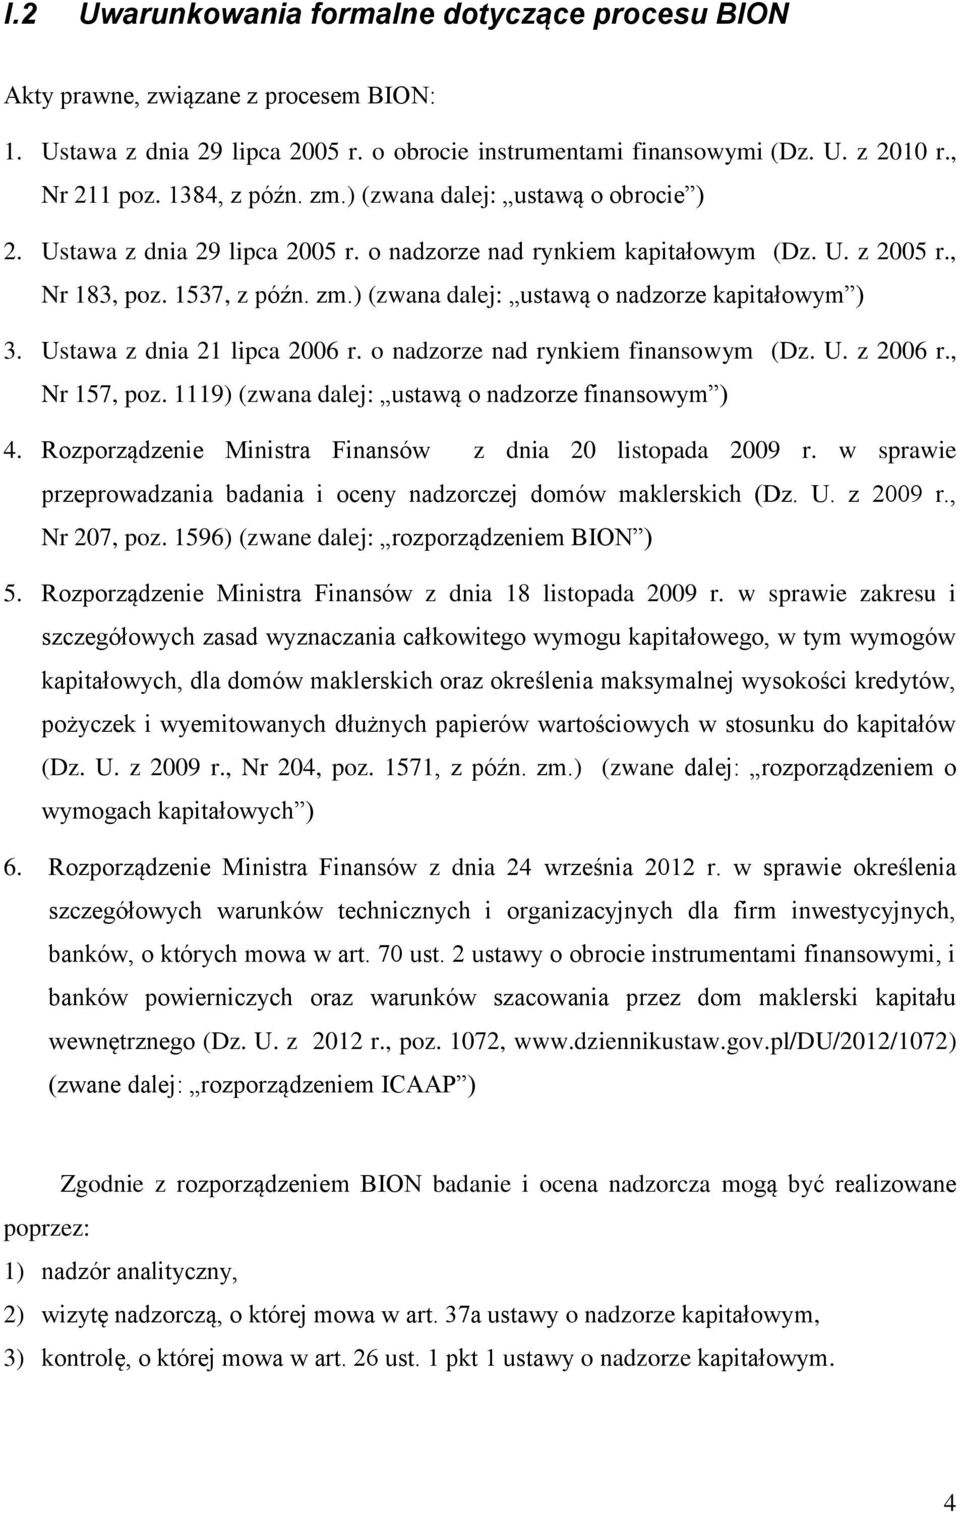 Ustawa z dnia 21 lipca 2006 r. o nadzorze nad rynkiem finansowym (Dz. U. z 2006 r., Nr 157, poz. 1119) (zwana dalej: ustawą o nadzorze finansowym ) 4.